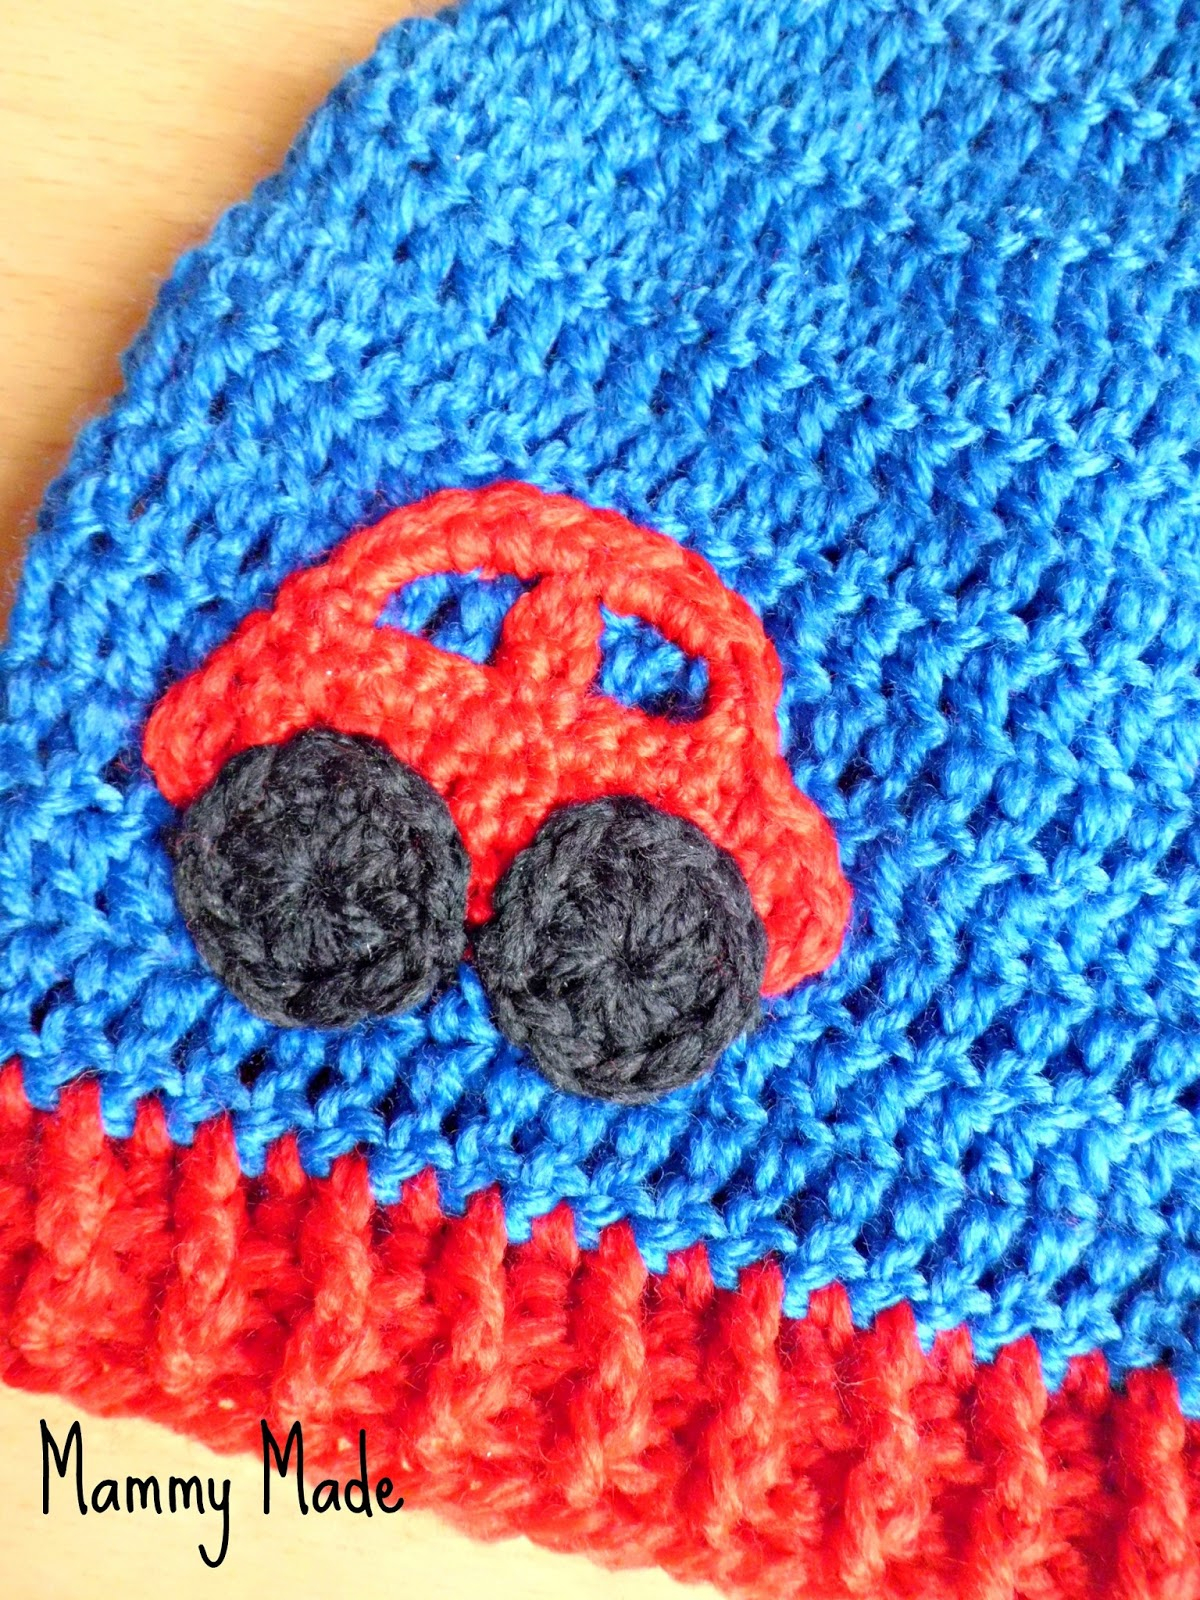 Free Crochet Applique Patterns Mammy Made Crochet Car Appliqu